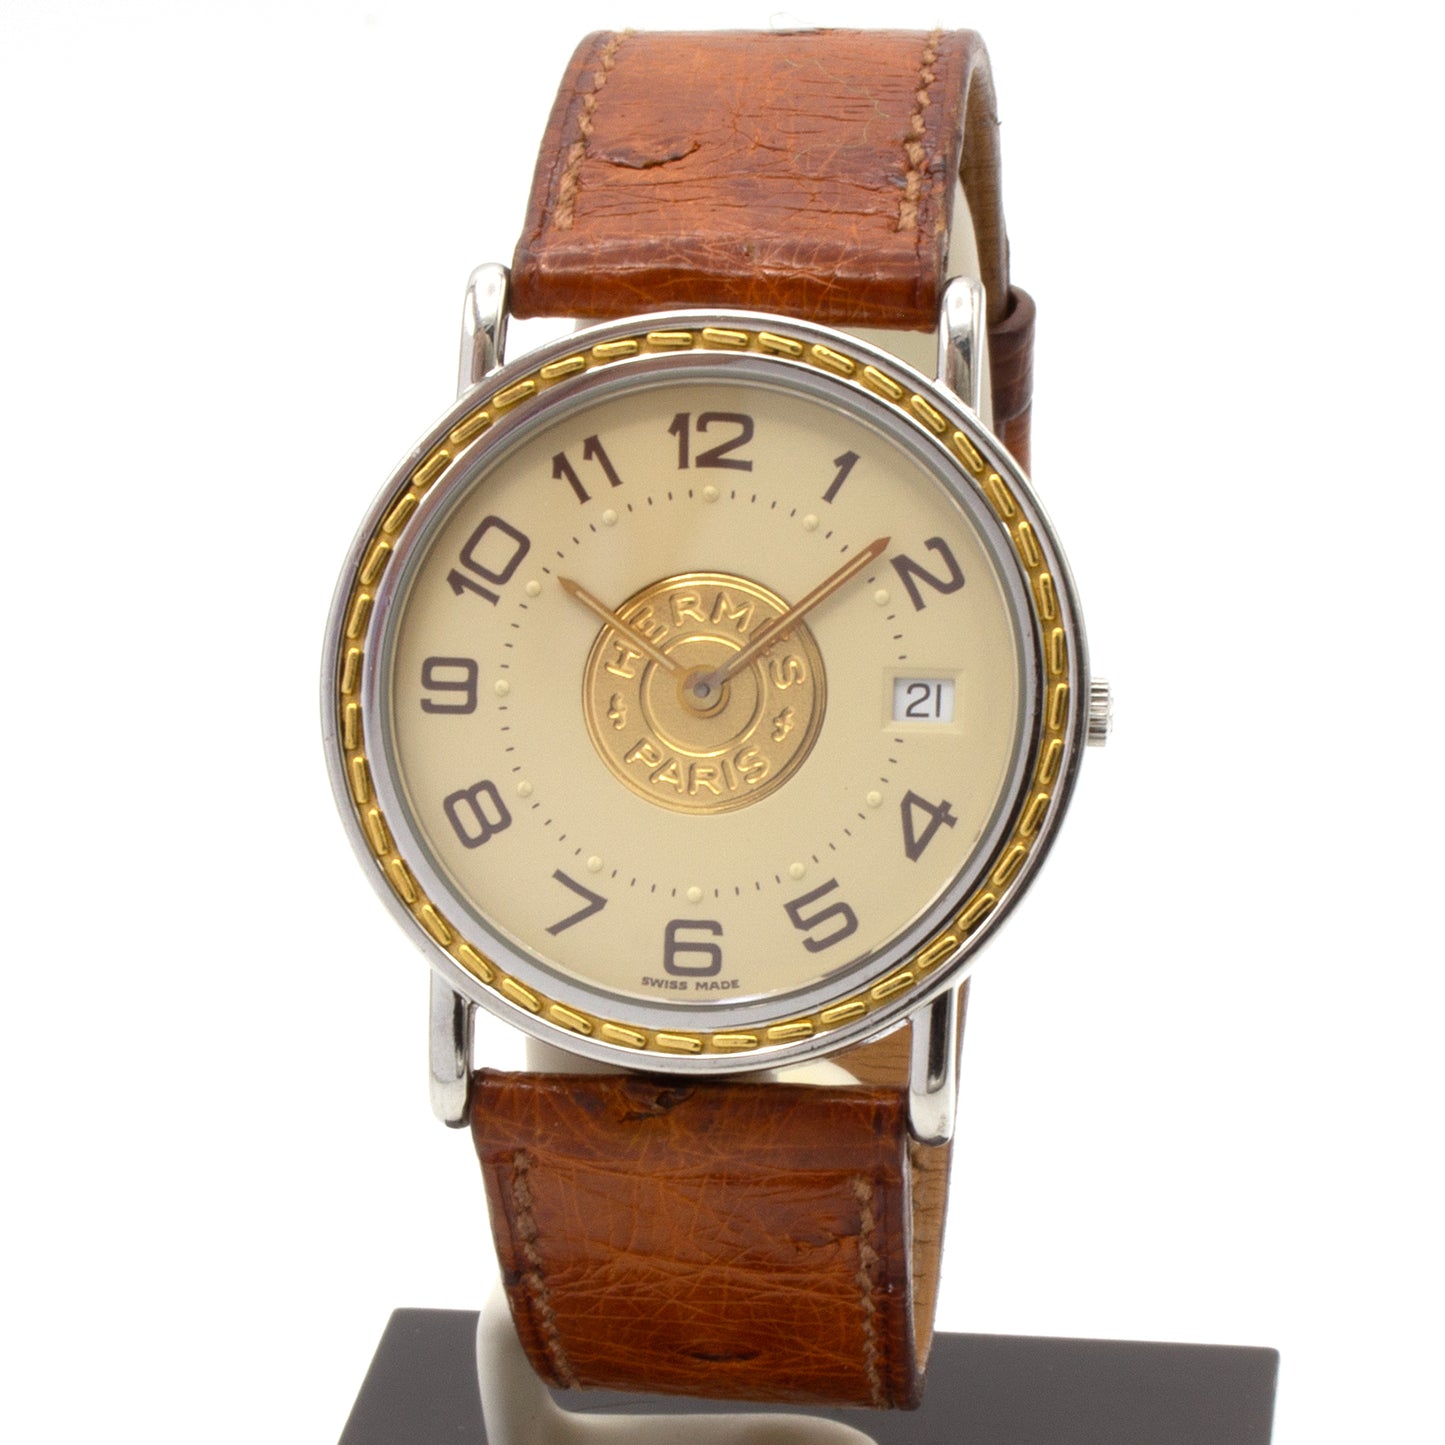 Hermès Sellier 32mm watch